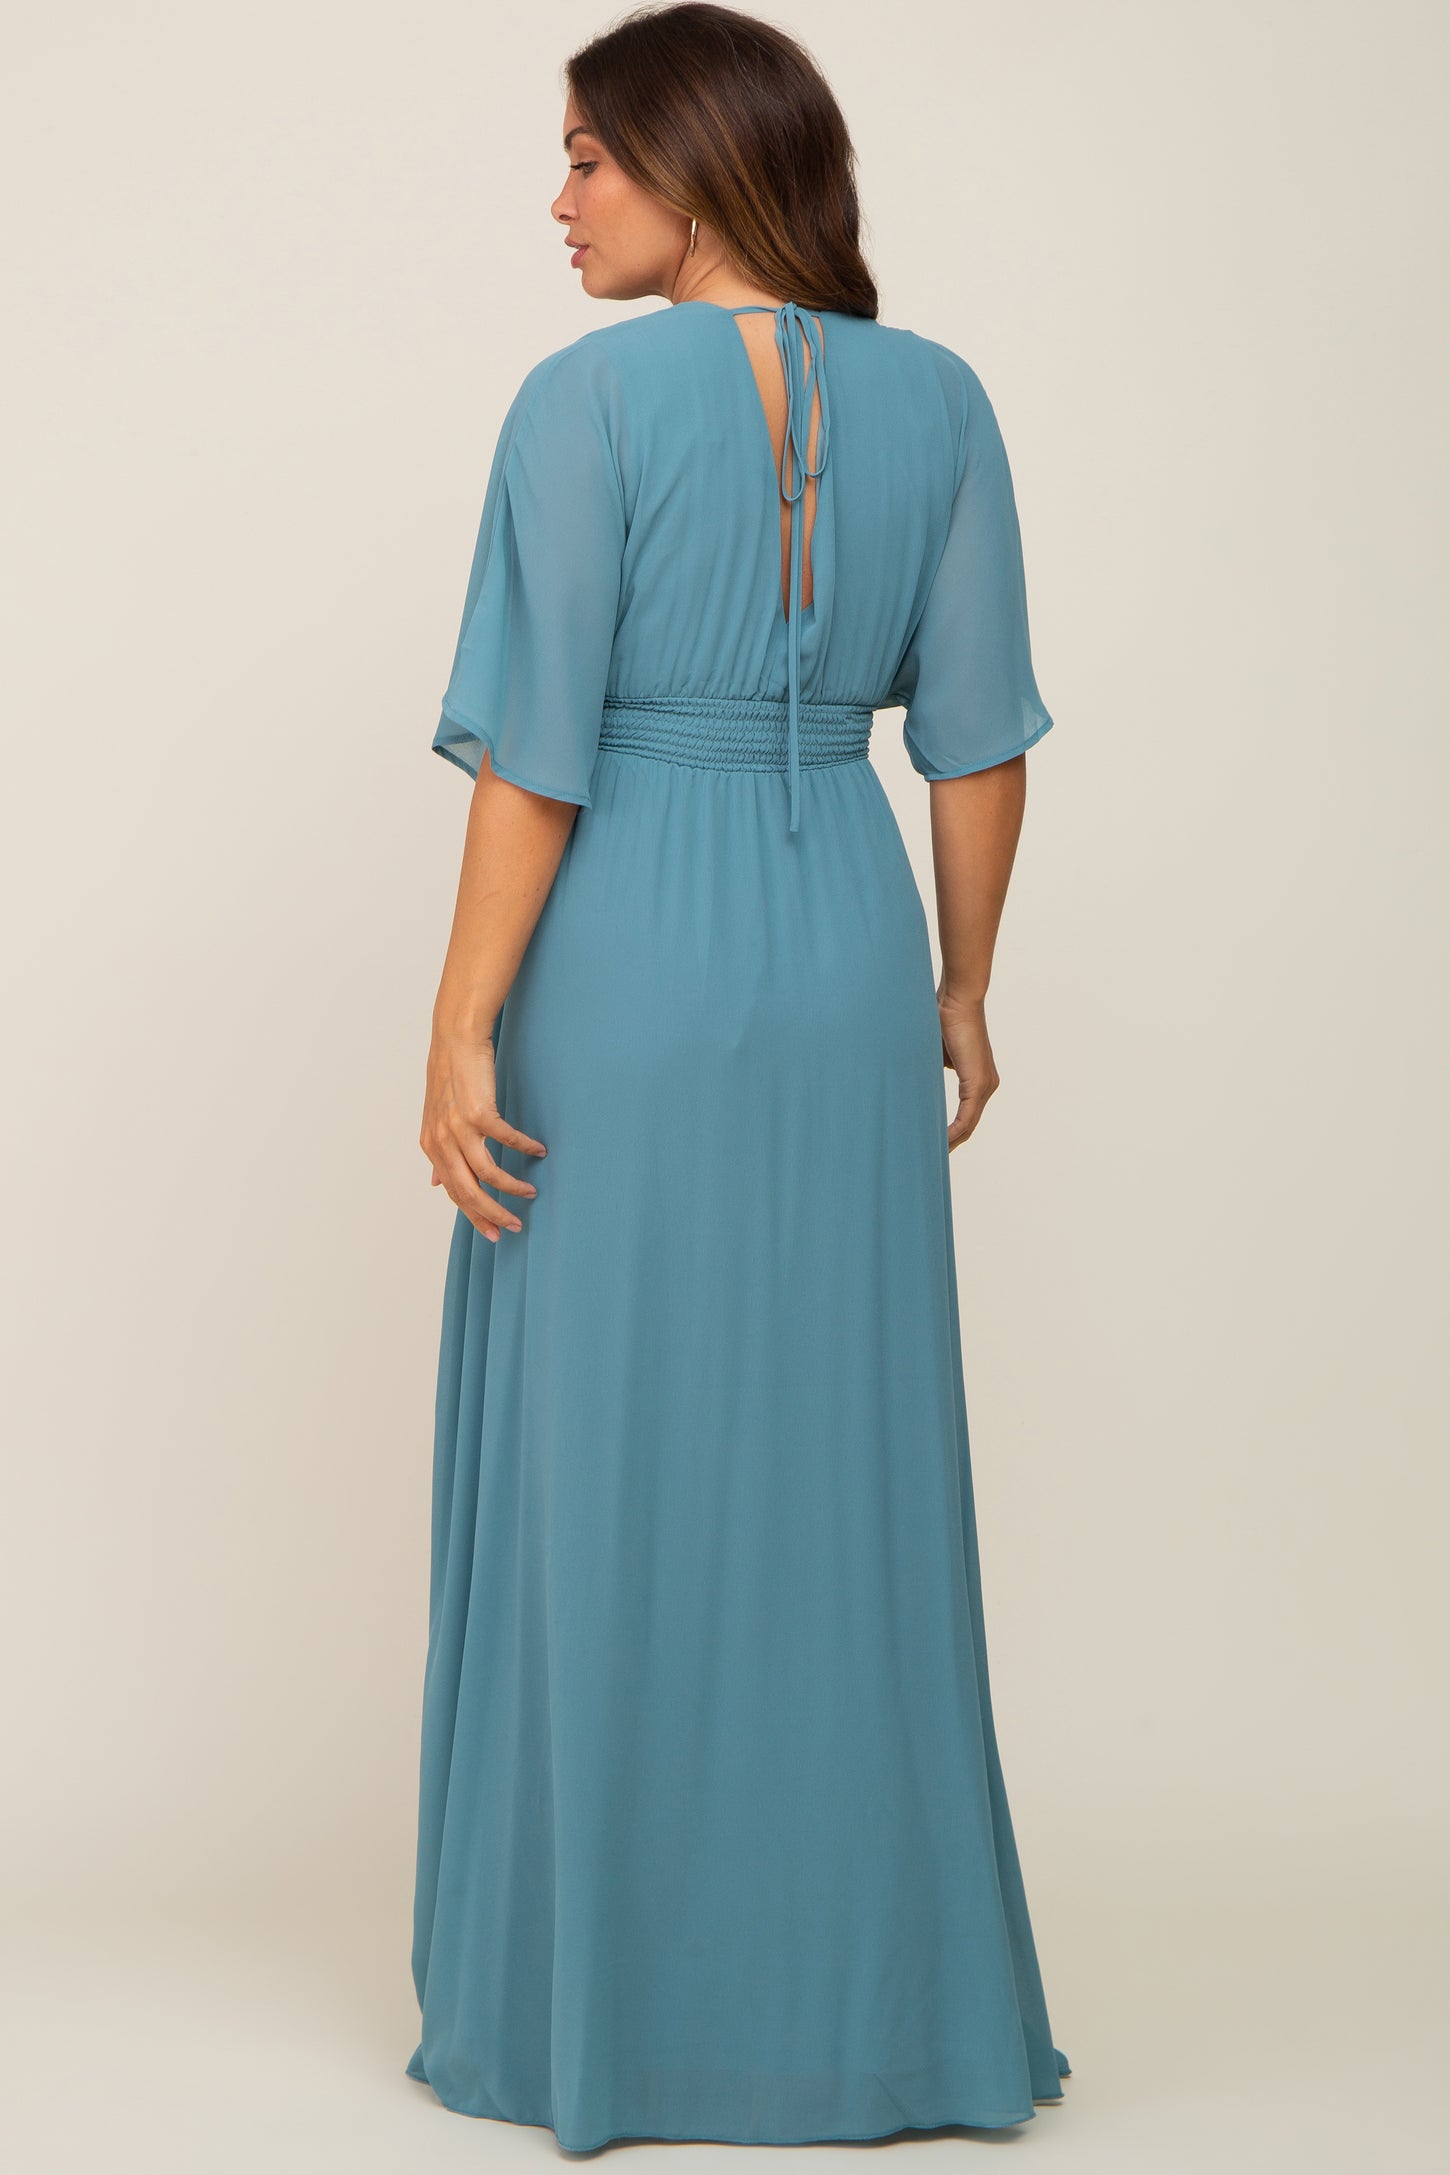 Turquoise Chiffon V-Neck Smocked Waist Maternity Maxi Dress